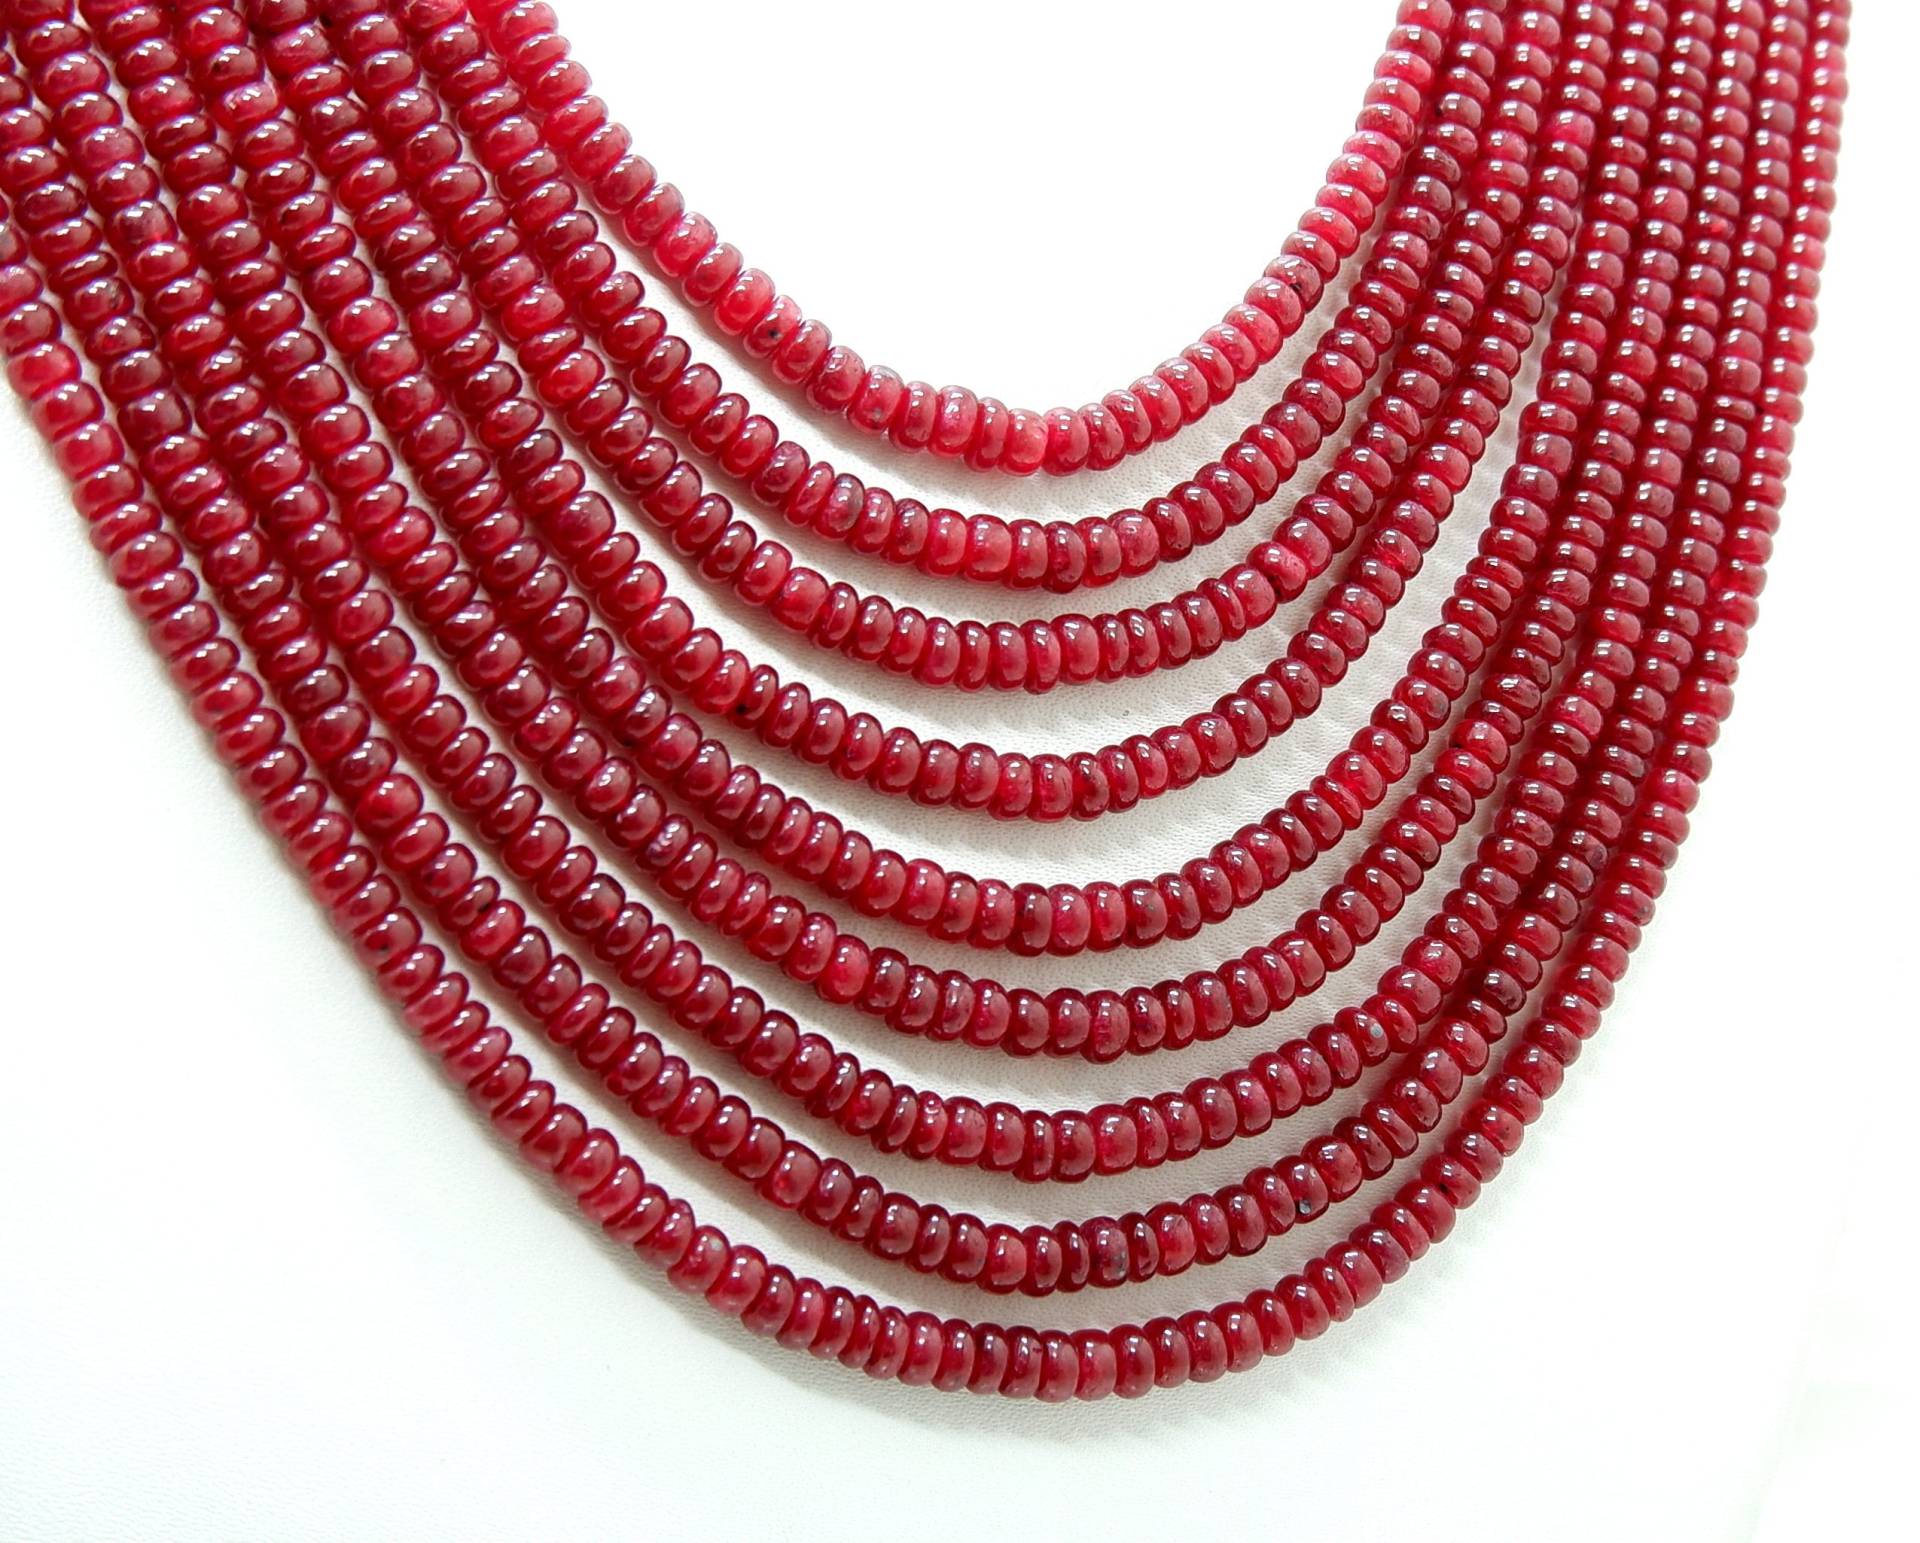 Natürliche Rubin Perlen 9 Strang Halskette - Roter Korund Größe 3-4.7 Mm, 20 "Zoll Länge, Erhalten Sie 50% Rabatt Auf Großhandel Zubehör Sale von THEGEMSBEADS